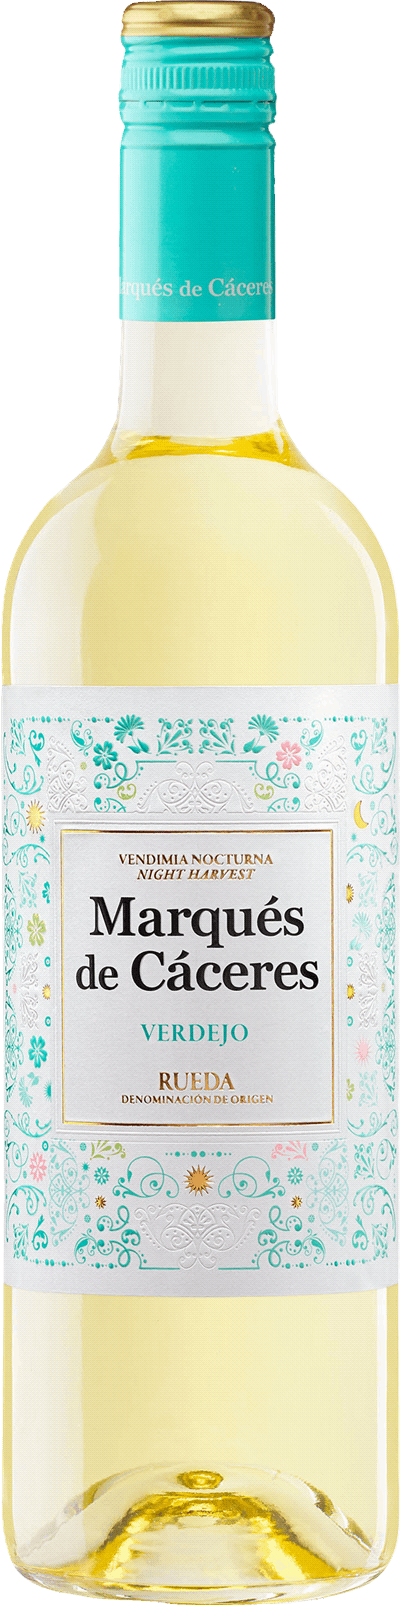 Marqués de Cáceres Verdejo 2019